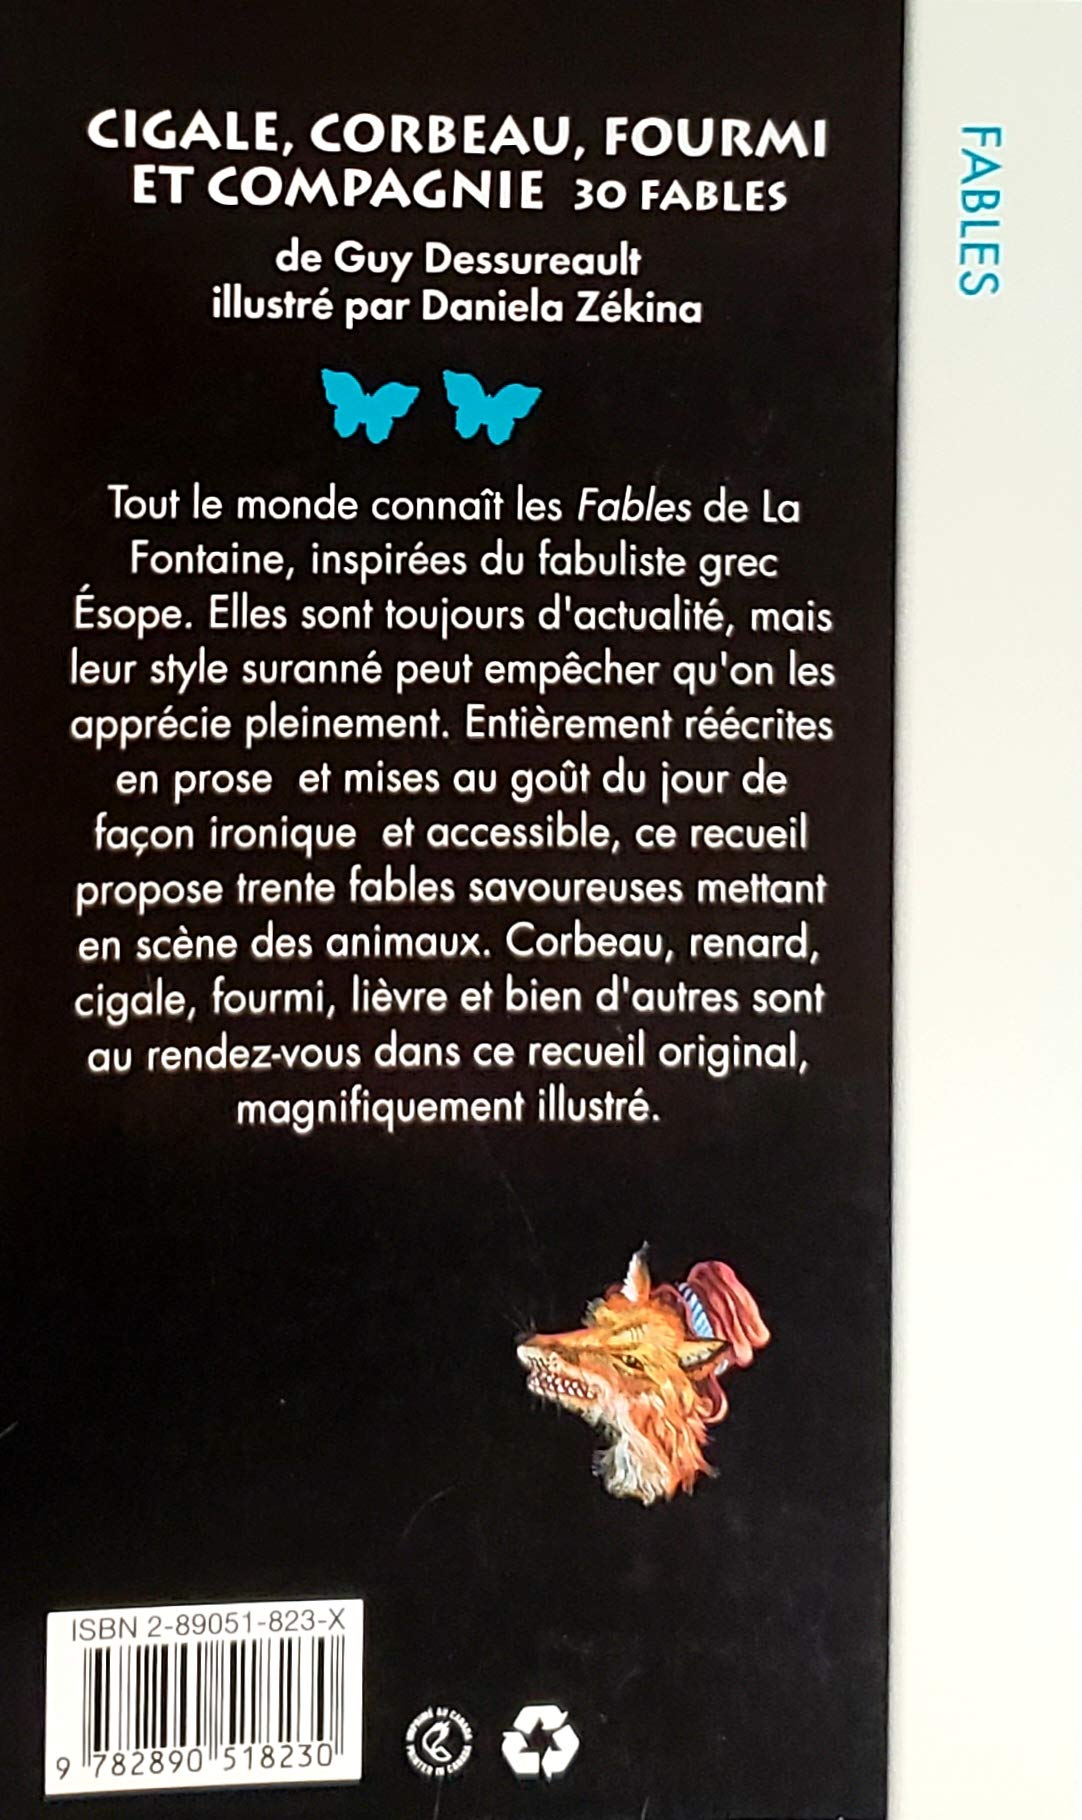 Papillon # 86 : Cigale, Corbeau, Fourmi et compagnie (Guy Dessureault)